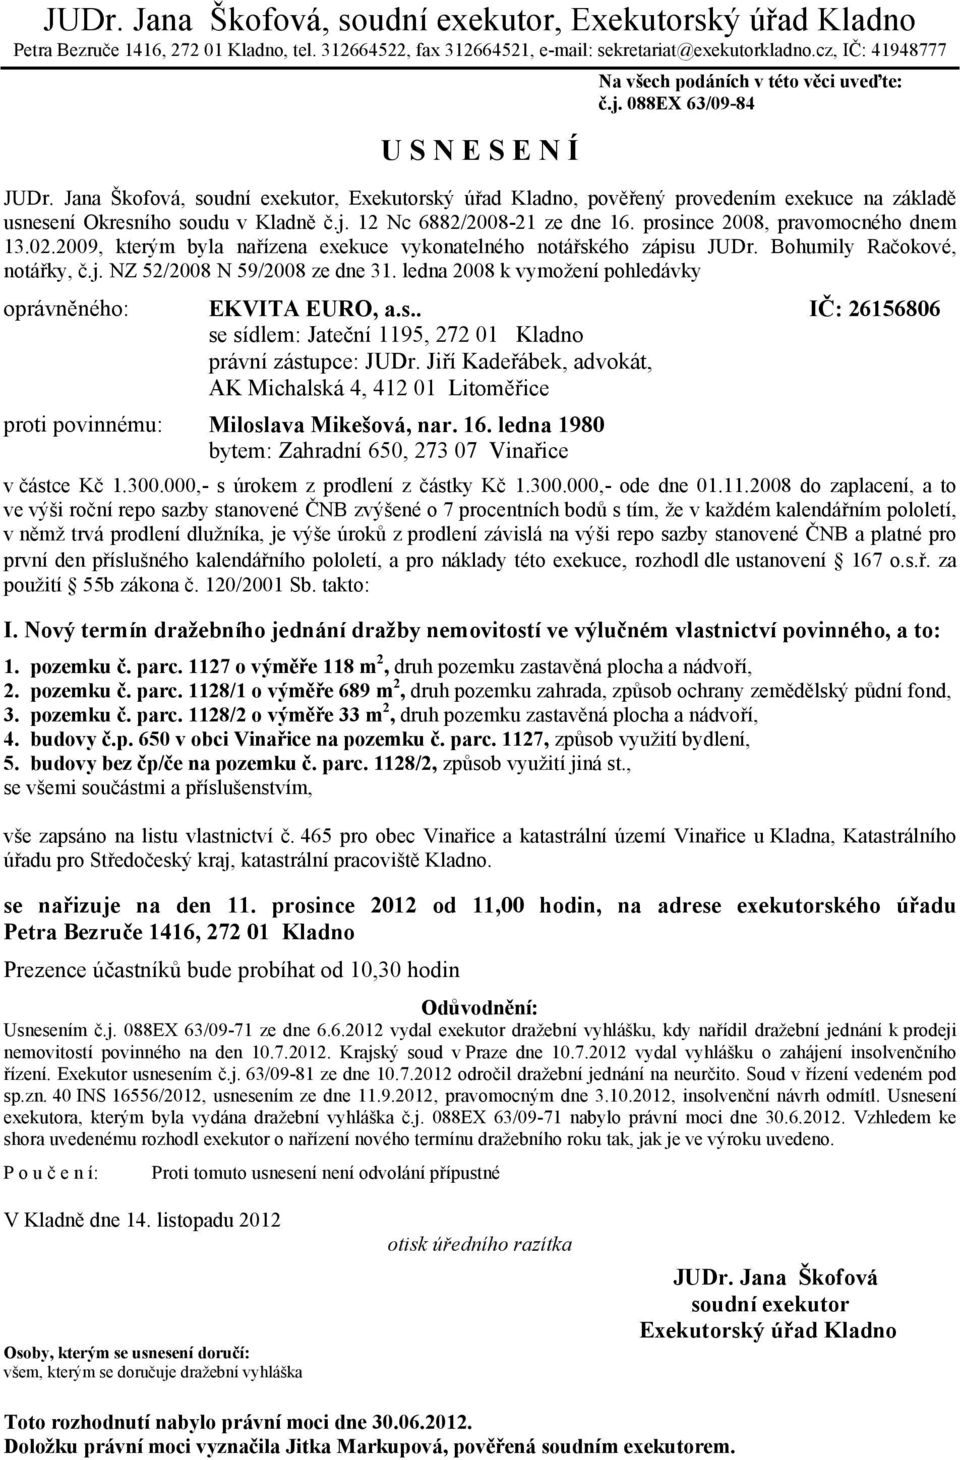 s.. proti povinnému: Miloslava Mikešová, nar. 16. ledna 1980 v částce Kč 1.300.000,- s úrokem z prodlení z částky Kč 1.300.000,- ode dne 01.11.